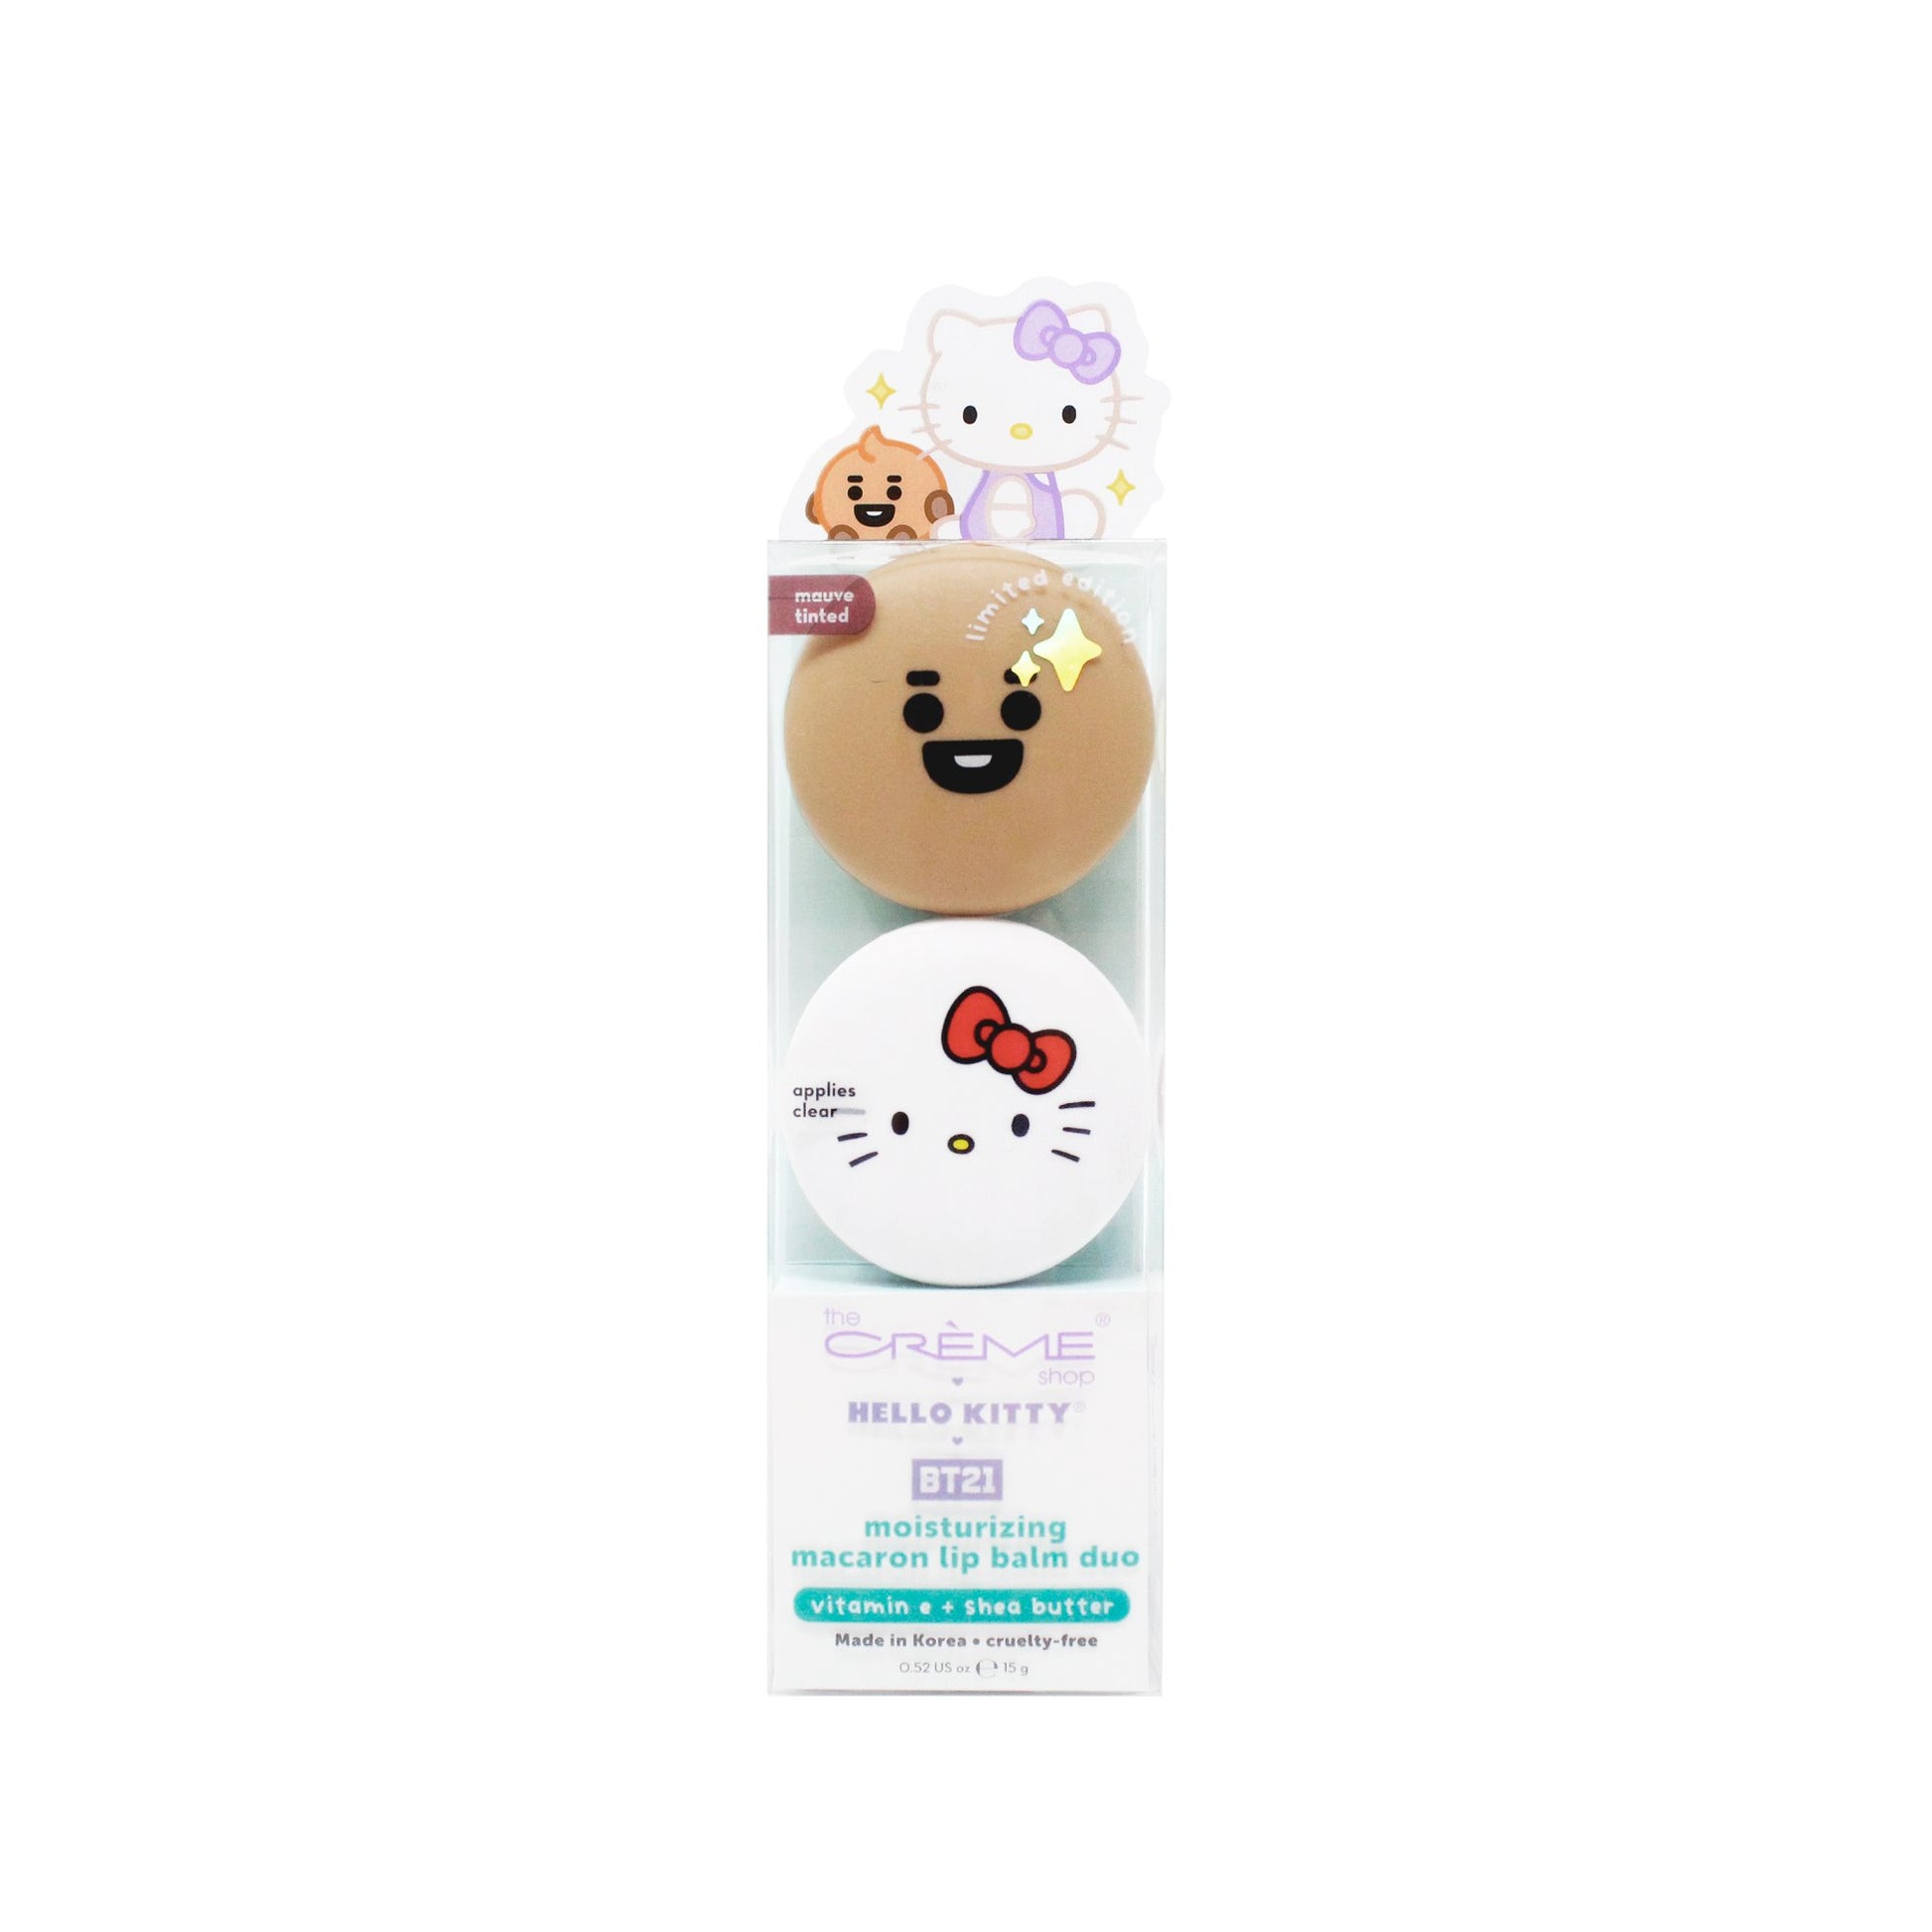 Hello Kitty & BT21 SHOOKY Moisturizing Macaron Lip Balm Duo, $18